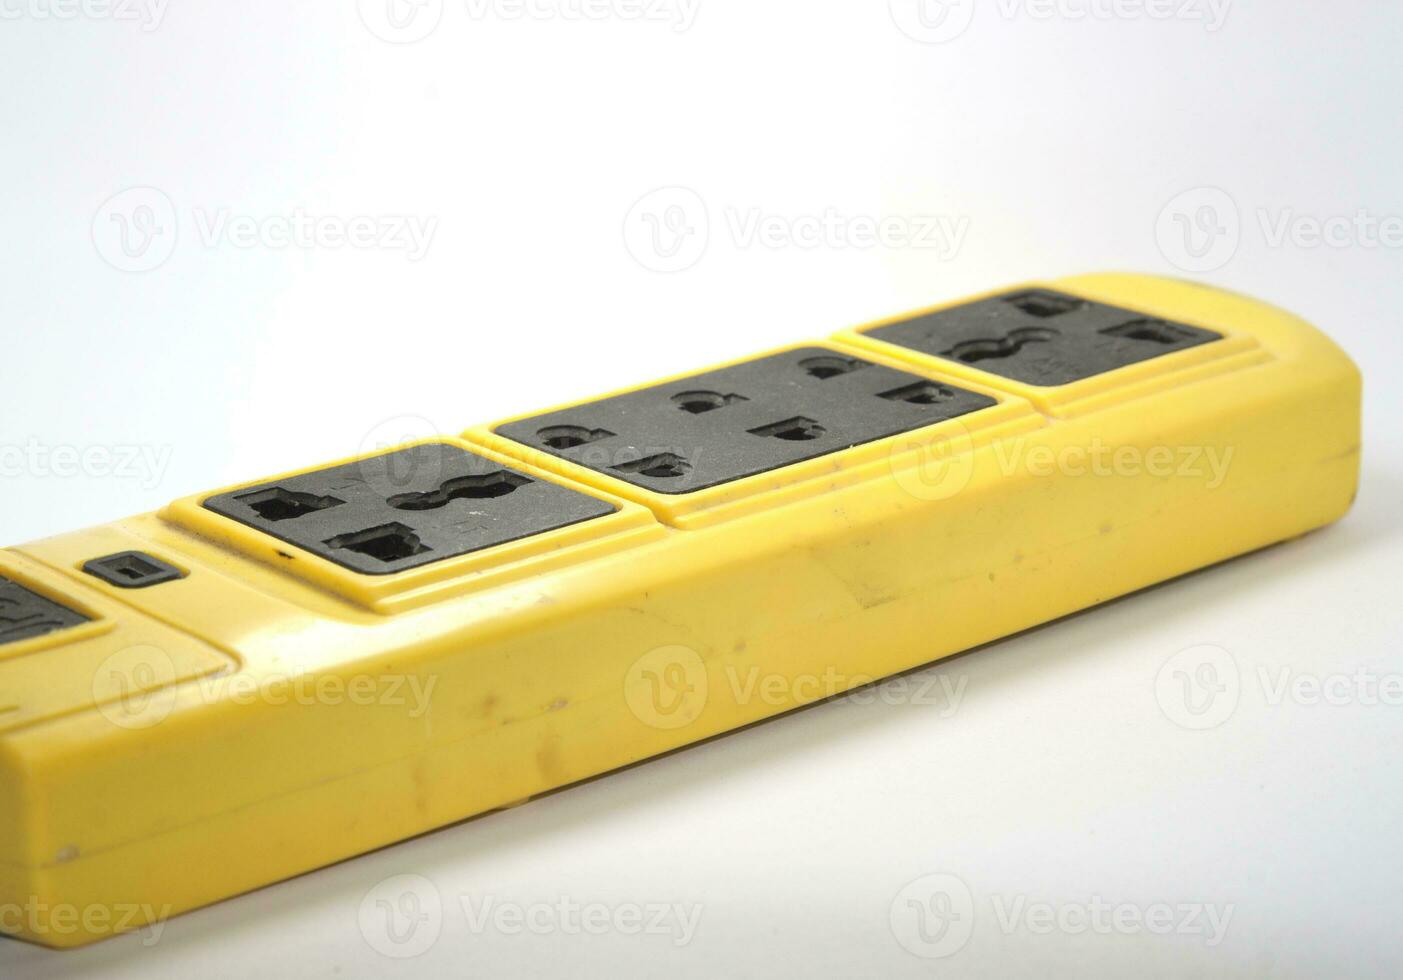 soquete plug-in elétrico com fio elétrico amarelo protetor com interruptor para eletrodomésticos em um fundo branco. foto